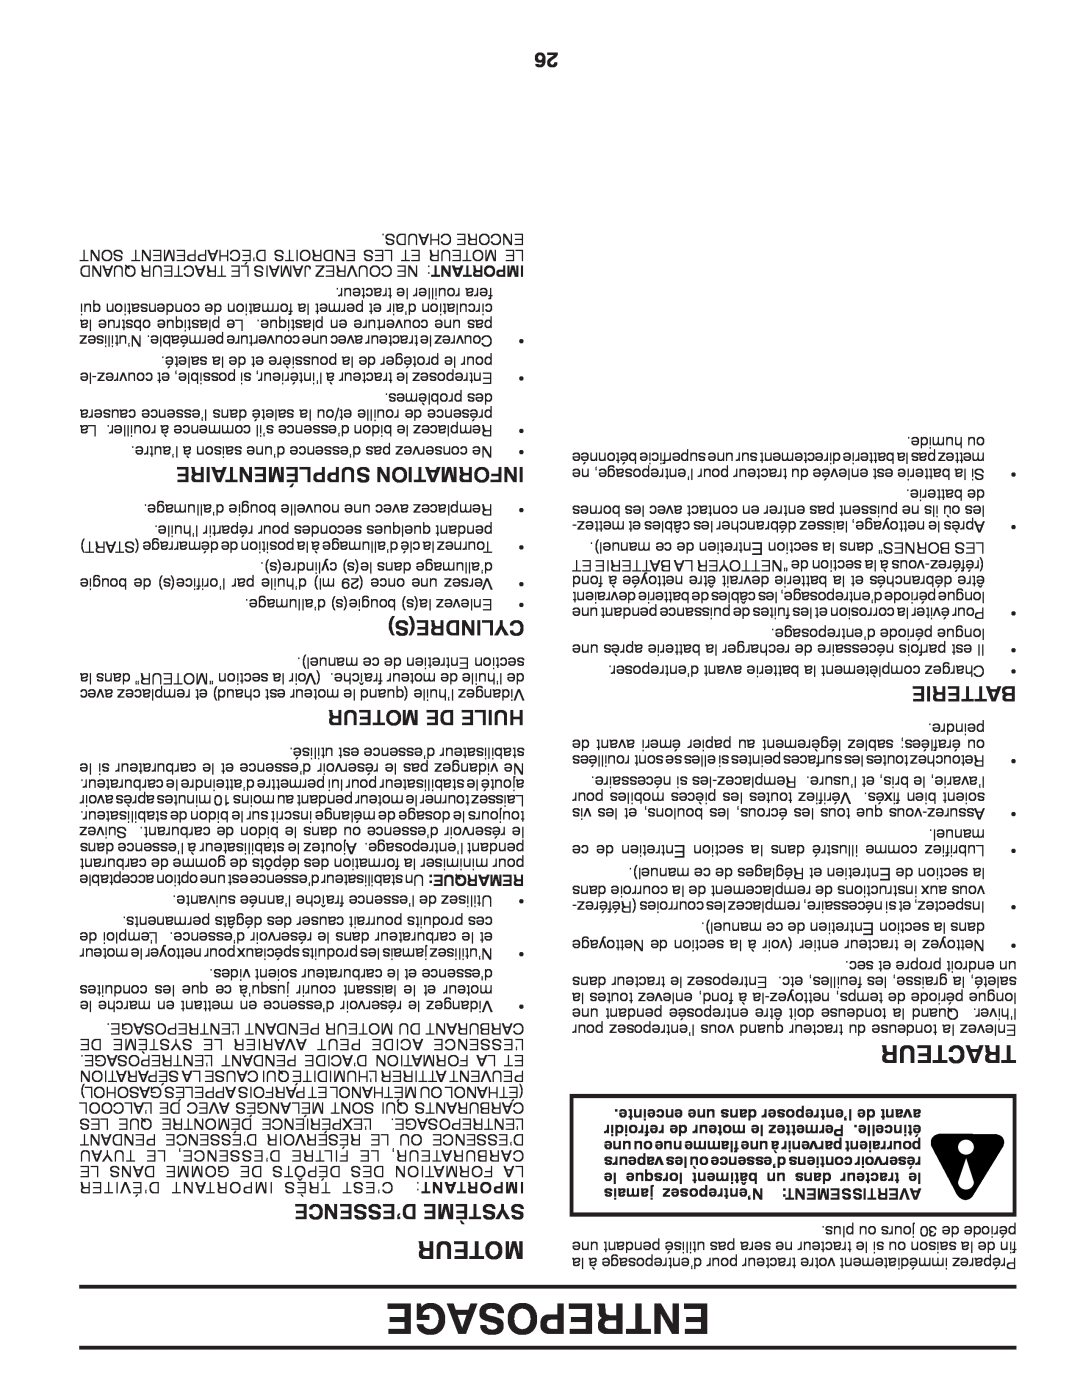 Poulan 423349 manual Entreposage, Tracteur, Supplémentaire Information, Cylindres, Moteur De Huile, D’Essence Système 